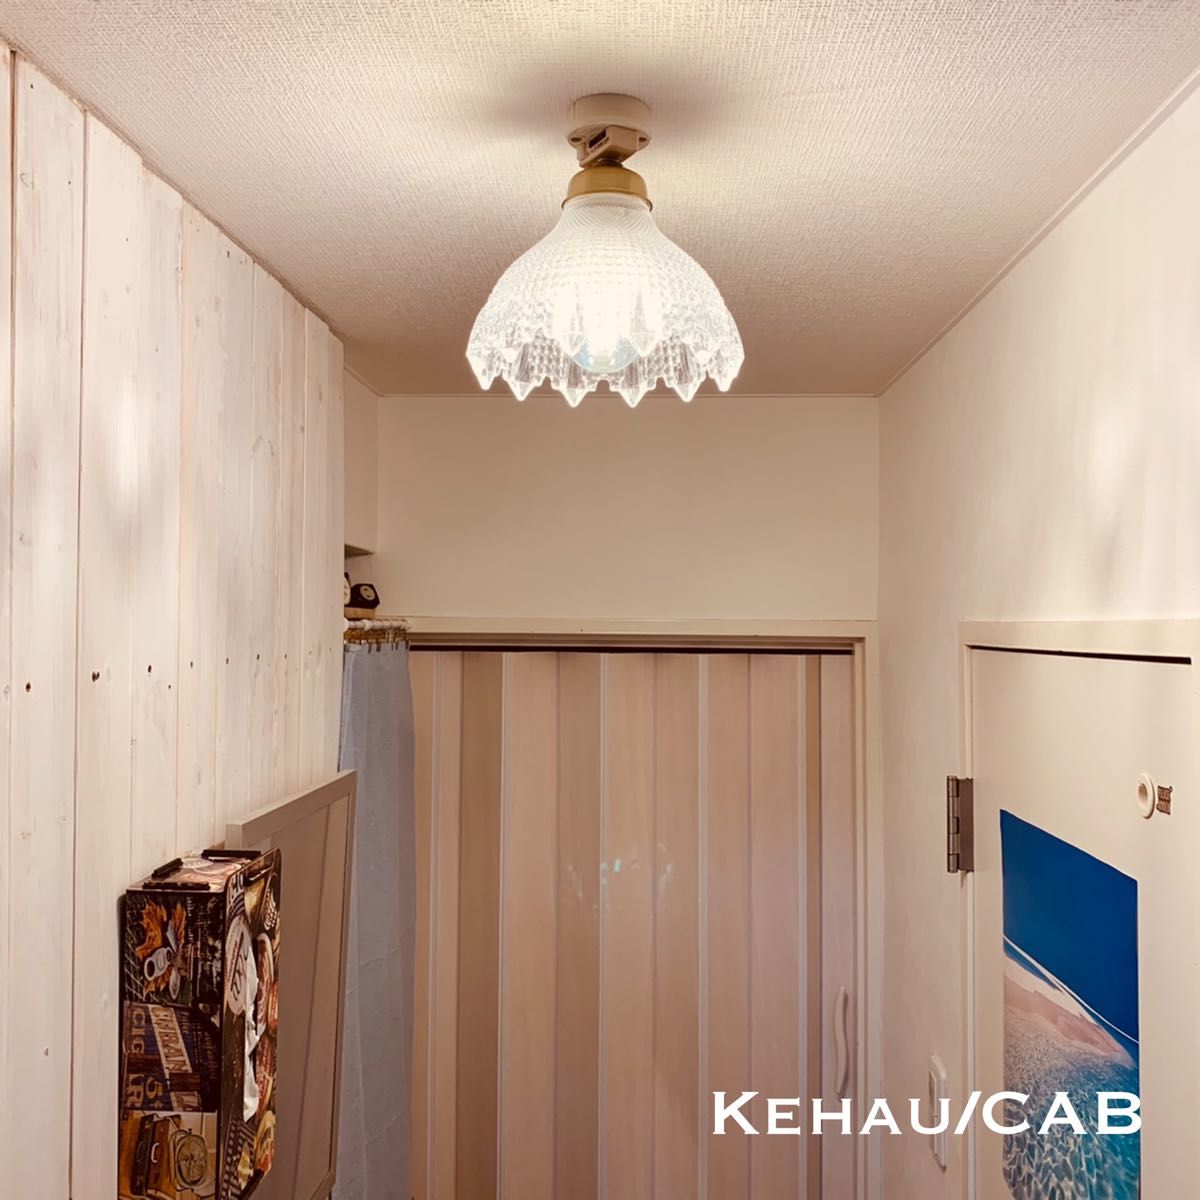 天井照明 Kehau/CAB シーリングライト ガラスシェード E26ソケット 真鋳古色 LED照明 間接照明 シャビー 送料込